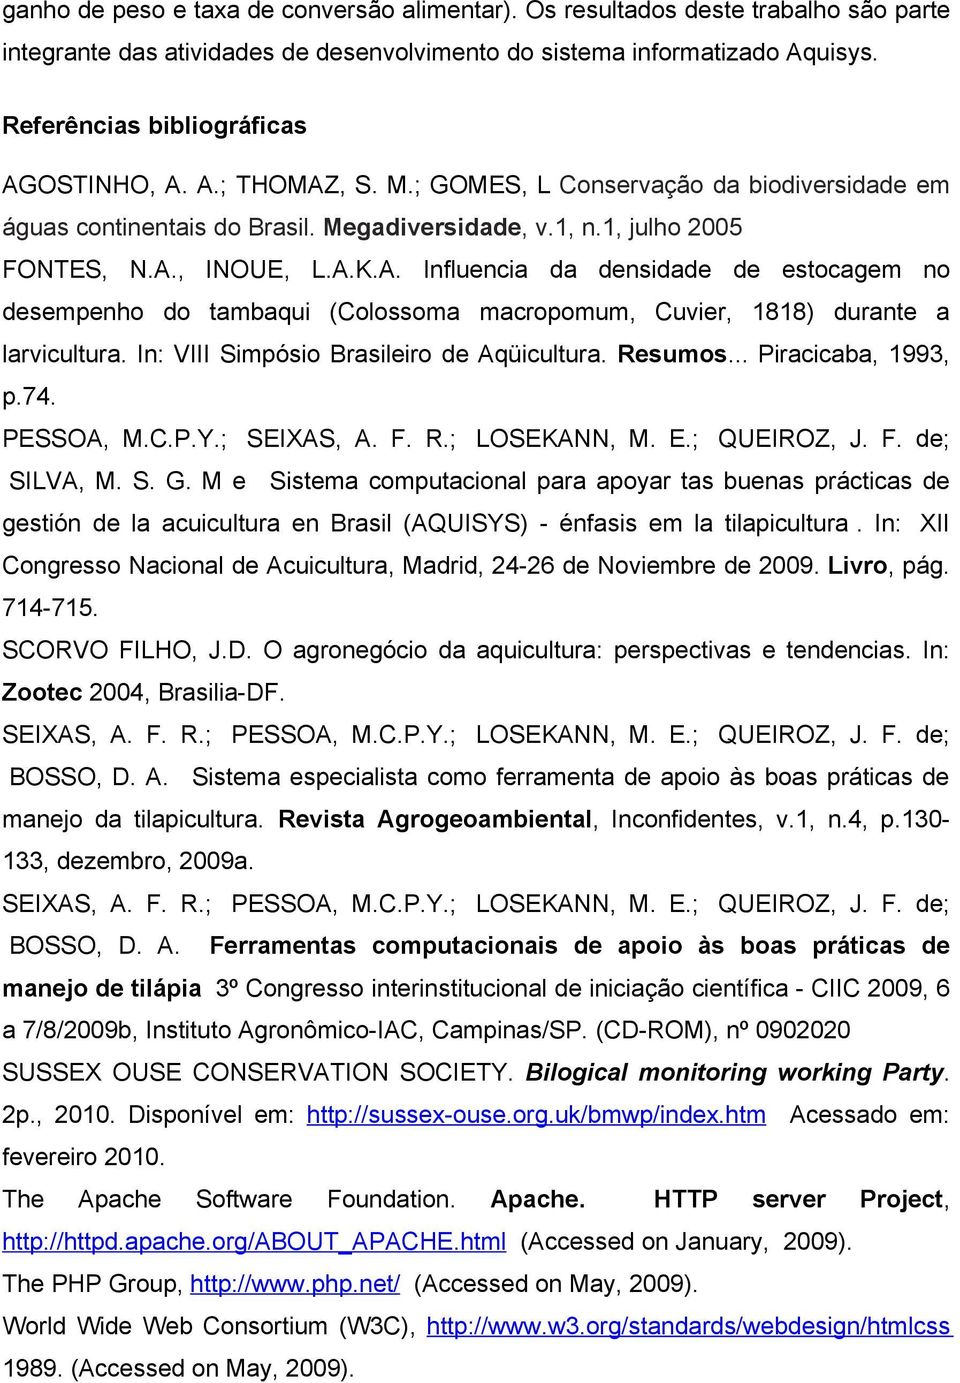 In: VIII Simpósio Brasileiro de Aqüicultura. Resumos... Piracicaba, 1993, p.74. PESSOA, M.C.P.Y.; SEIXAS, A. F. R.; LOSEKANN, M. E.; QUEIROZ, J. F. de; SILVA, M. S. G.